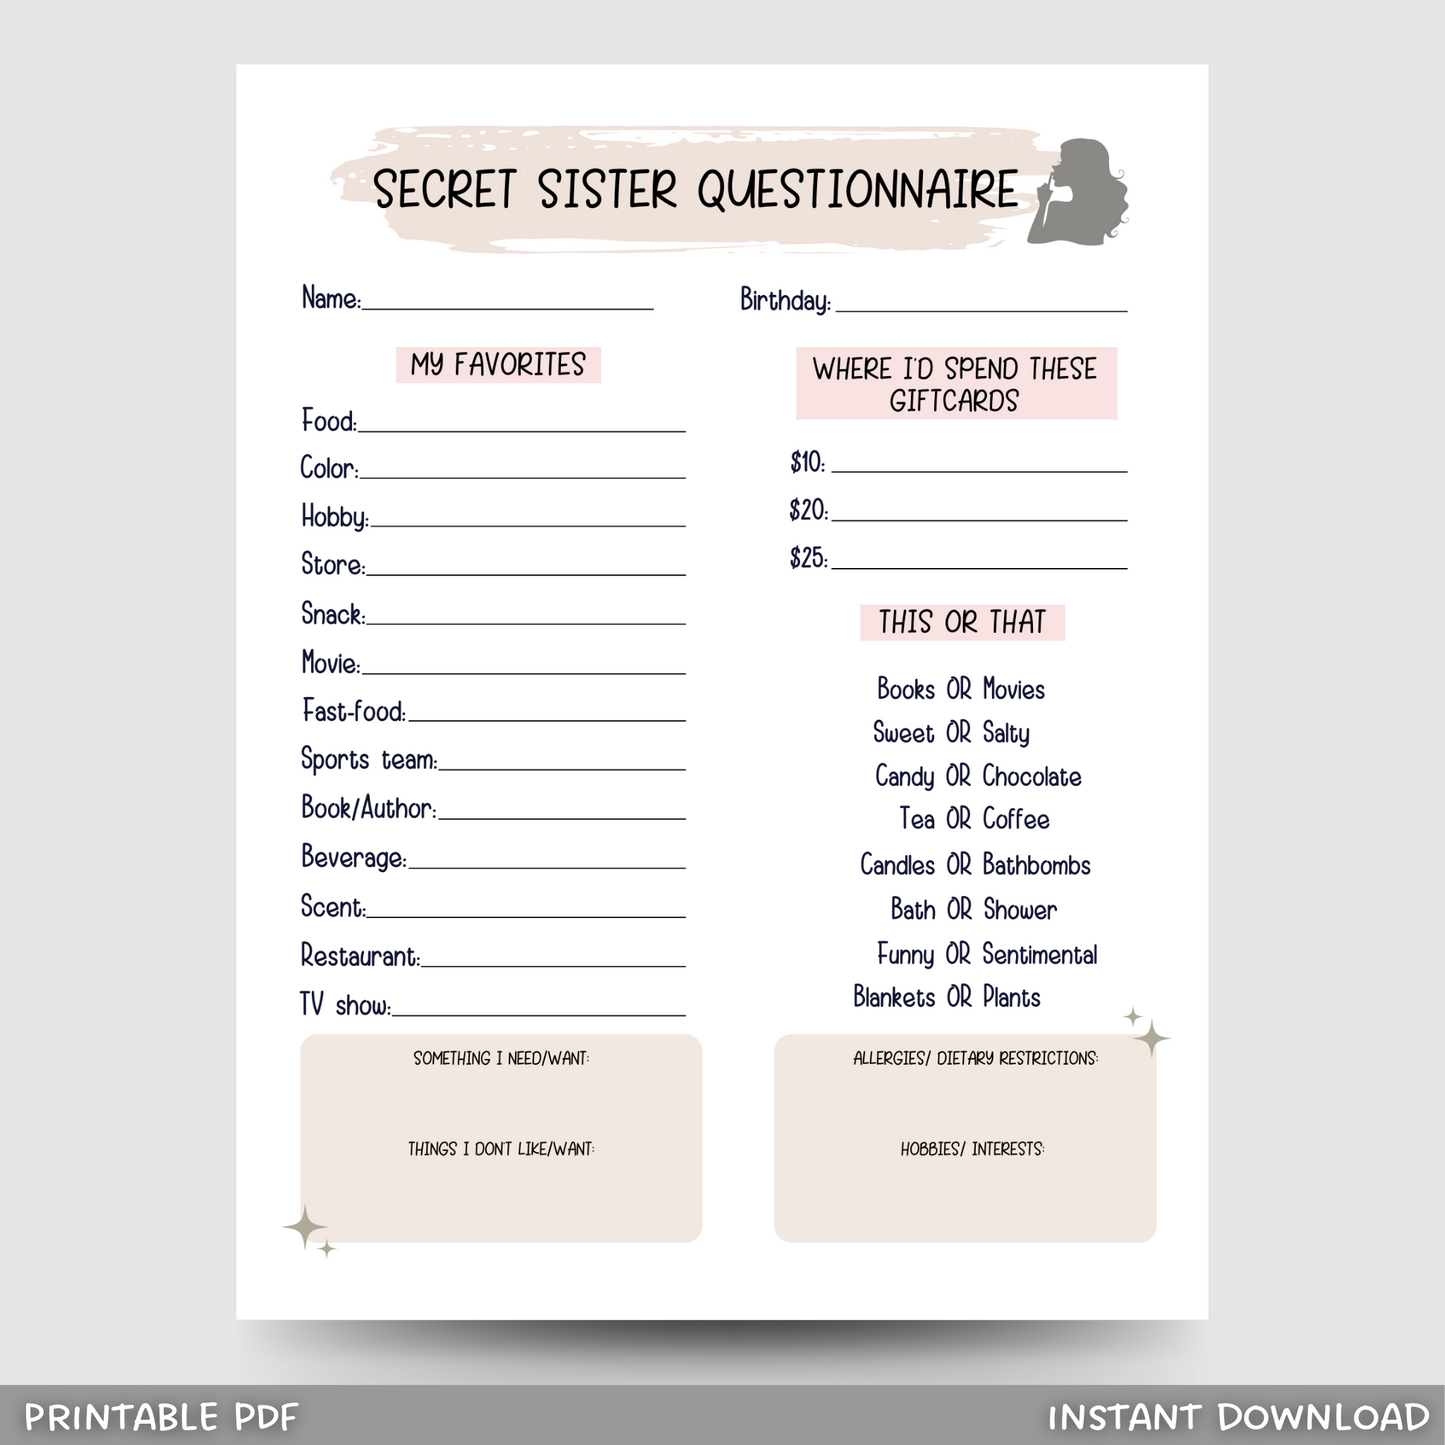 Secret Sister Questionnaire Printable, All About Me Survey